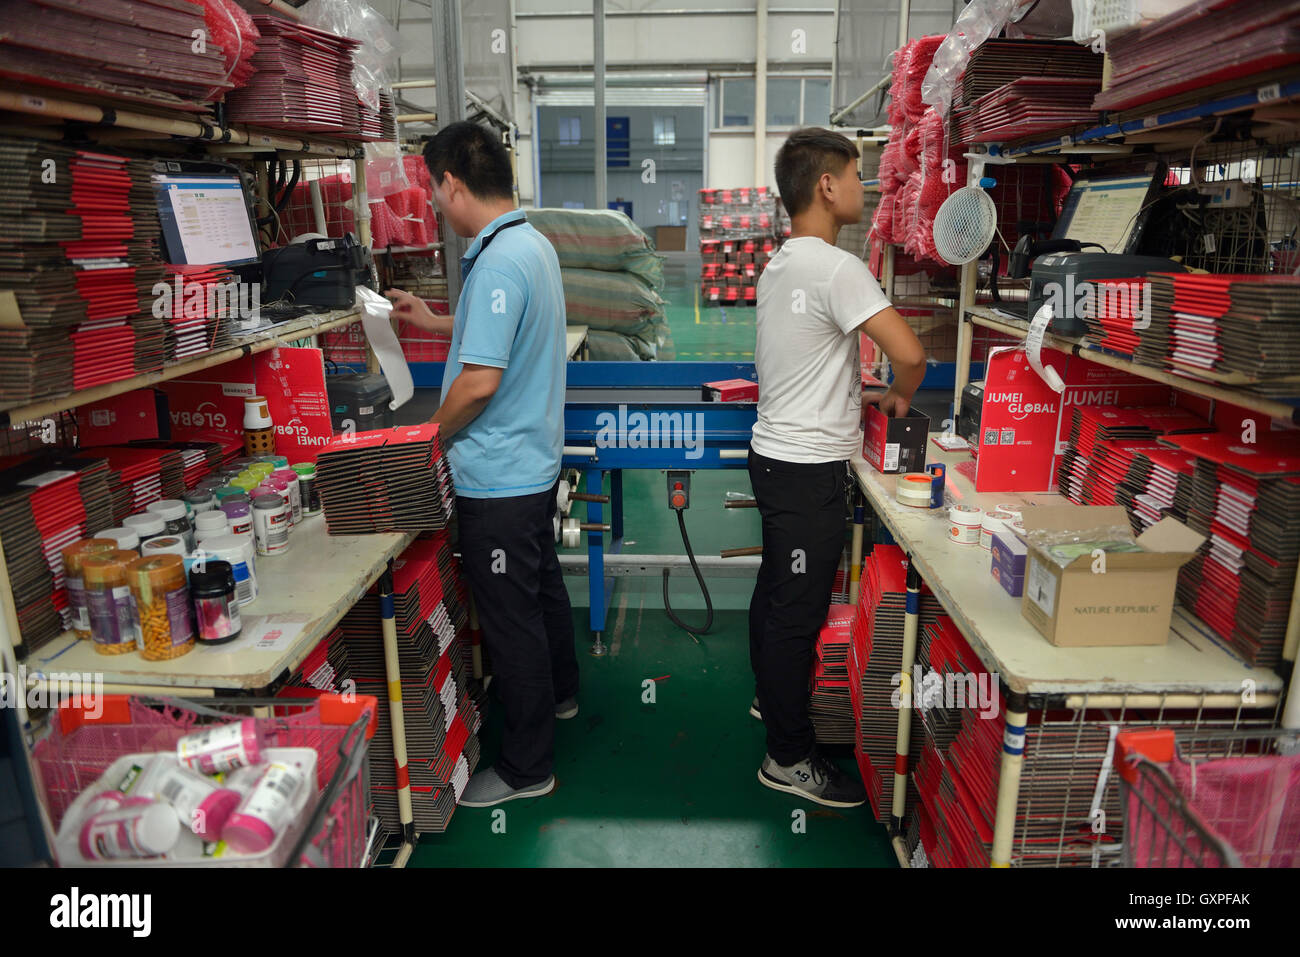 Lavoratori avvolgere pacchi di merci effettuato acquisti da oltremare attraverso Jumei Global online canale durante la consegna al EHL Registro internazionale Foto Stock